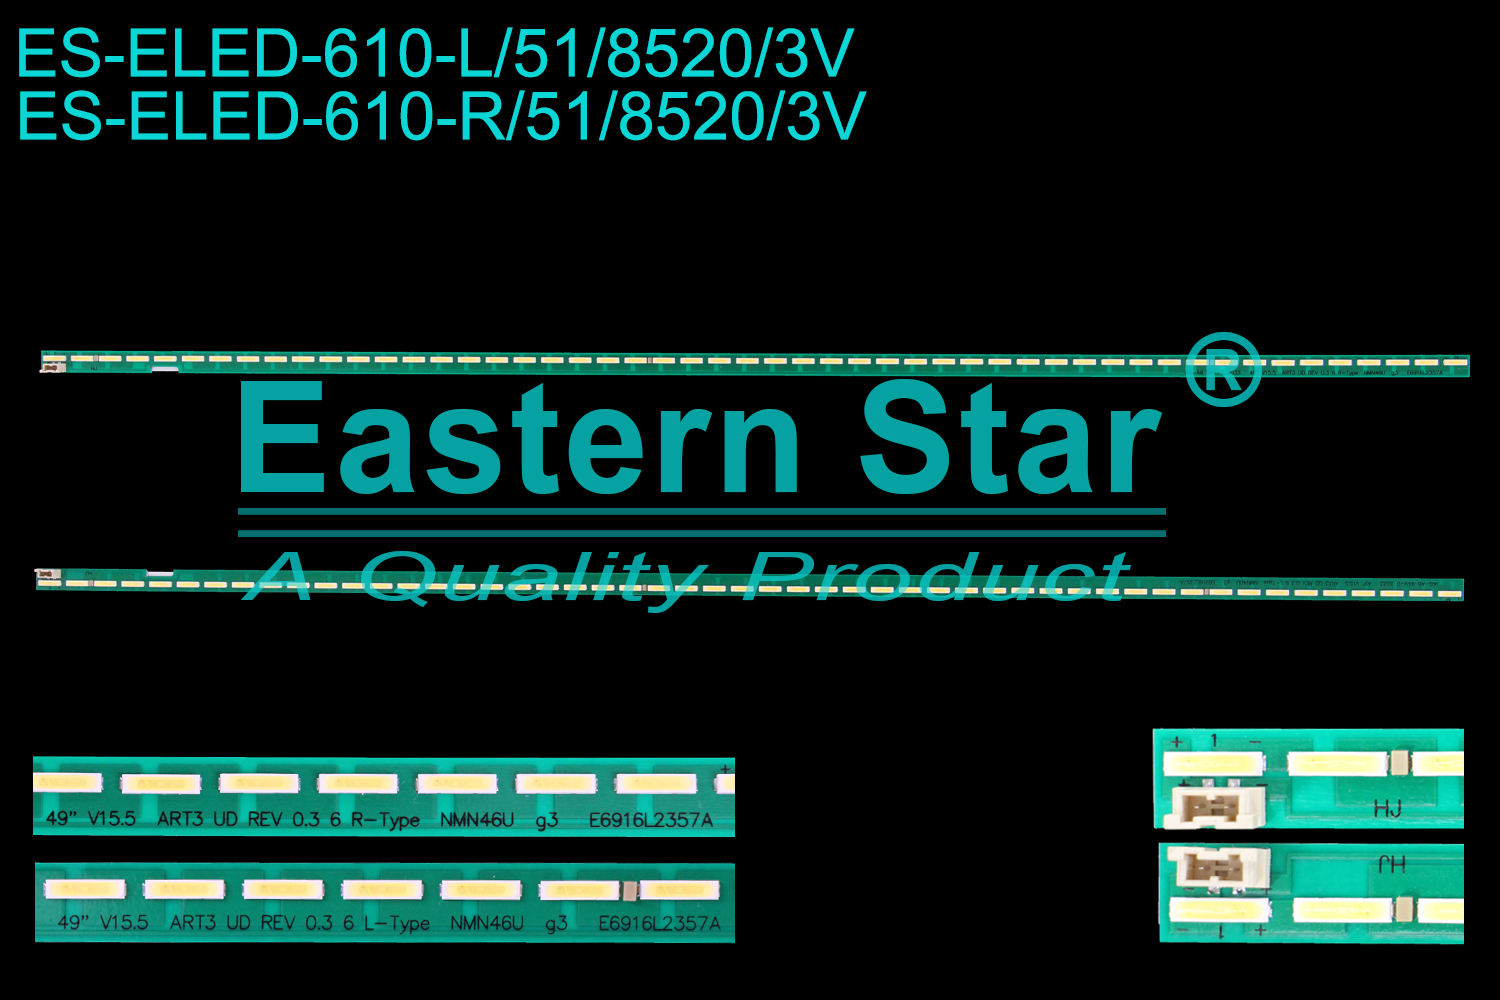 ES-ELED-610 ELED/EDGE TV backlight use for 49'' Lg  49UF6430-UB 49" V15.5 ART3 UD REV0.3 6 L-TYPE  49" V15.5 ART3 UD REV0.3 6 R-TYPE LED STRIPS(2)